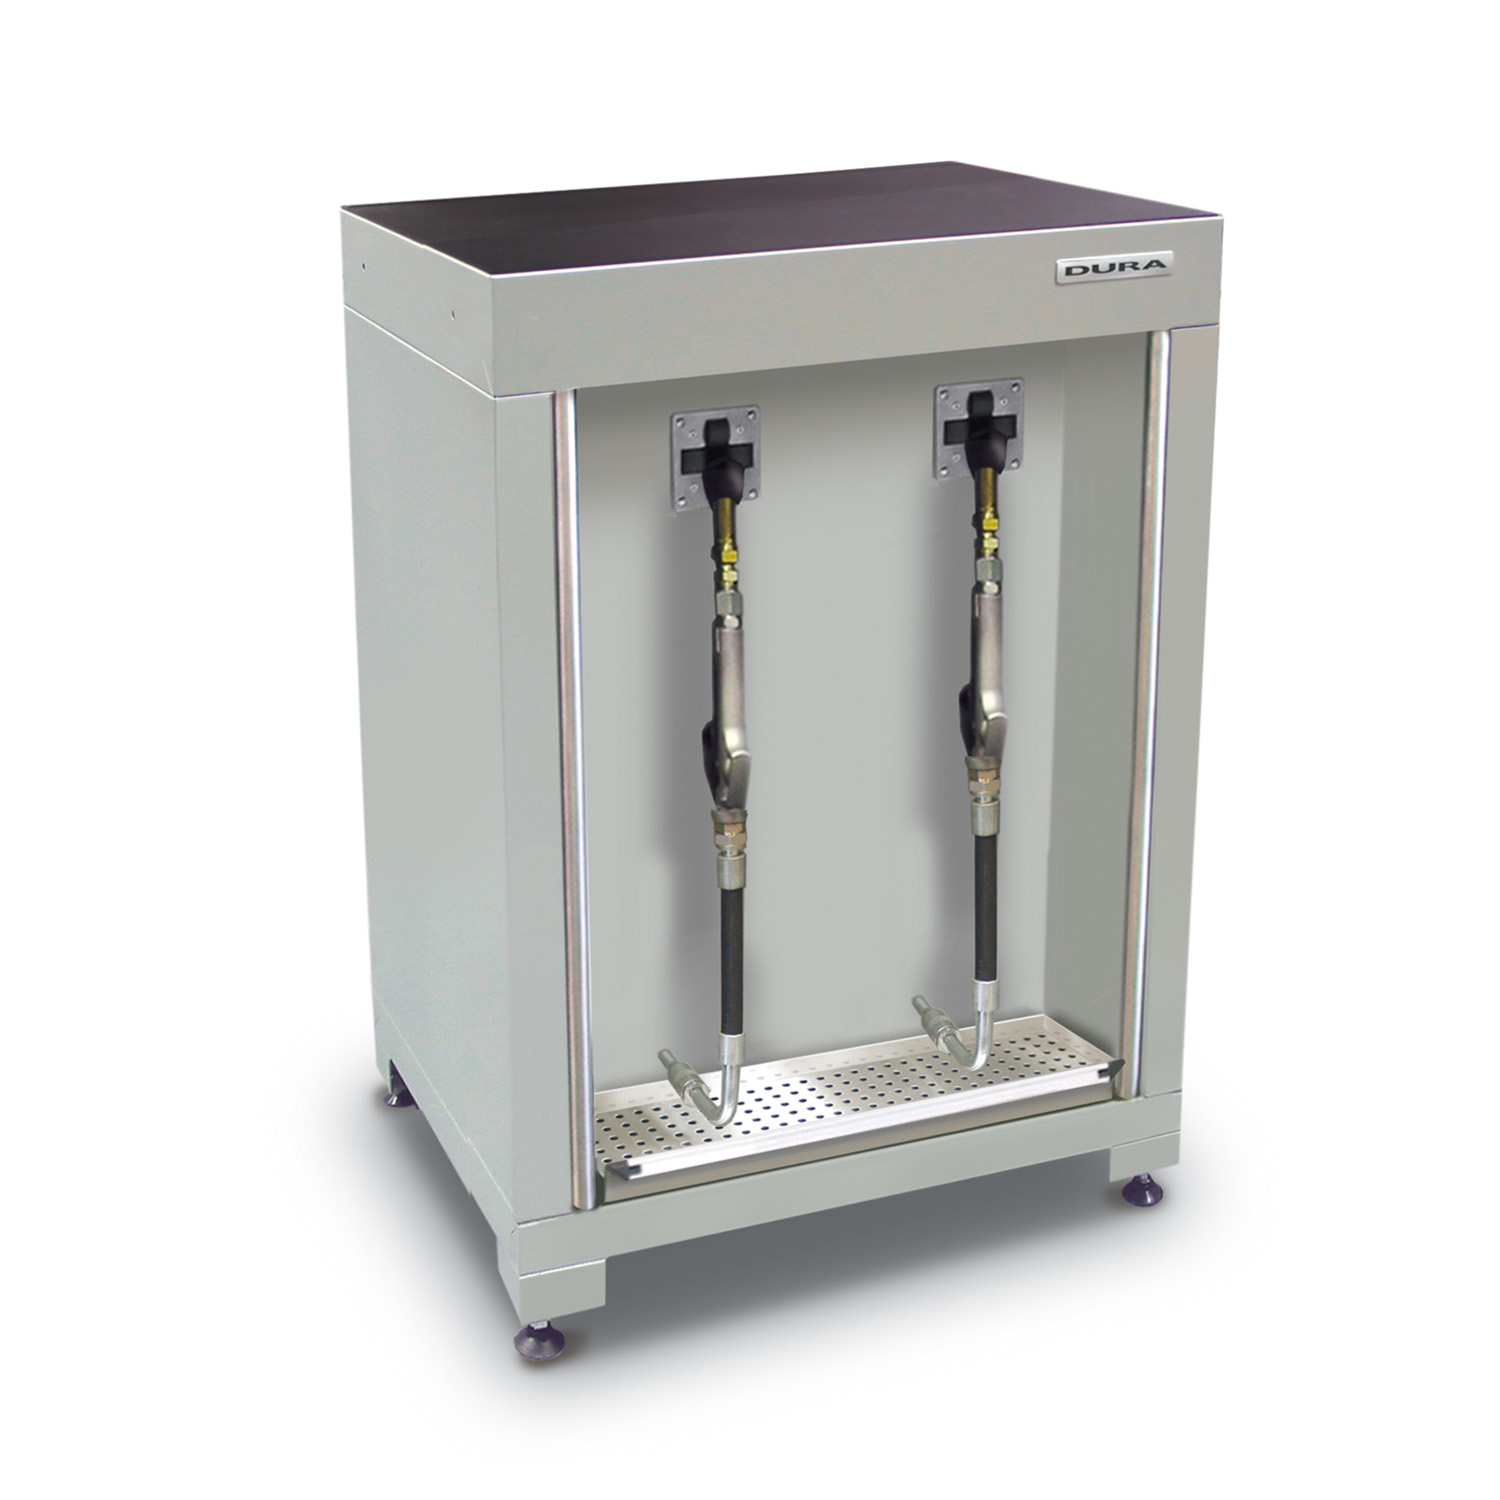 600mm Low-level fluid management cabinet (600mm depth)